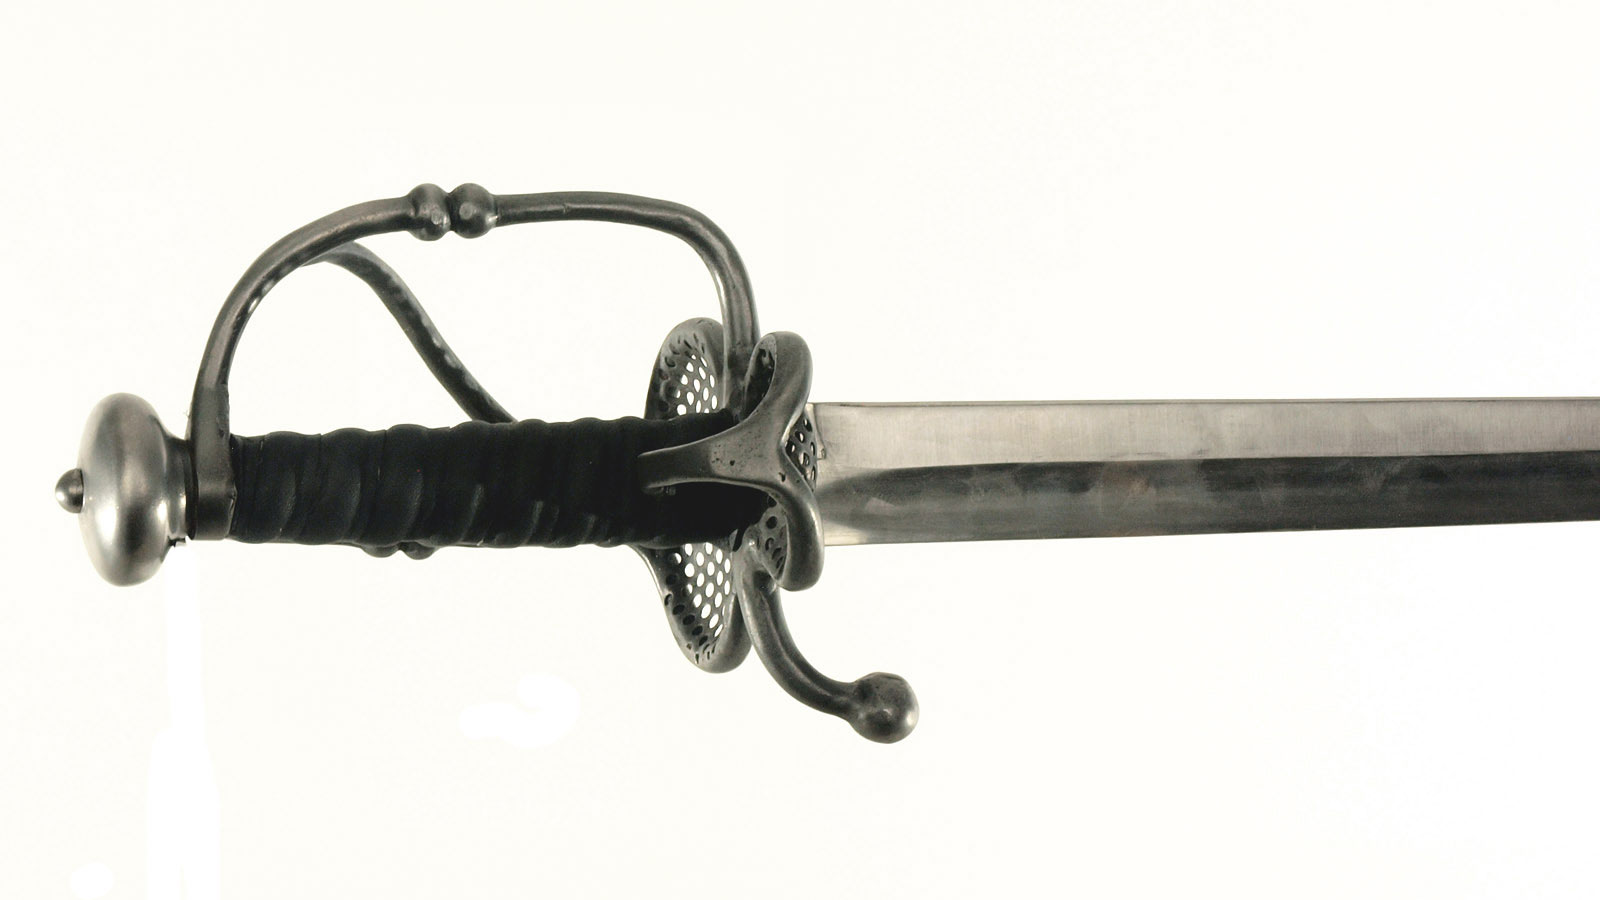 Cavalry sword